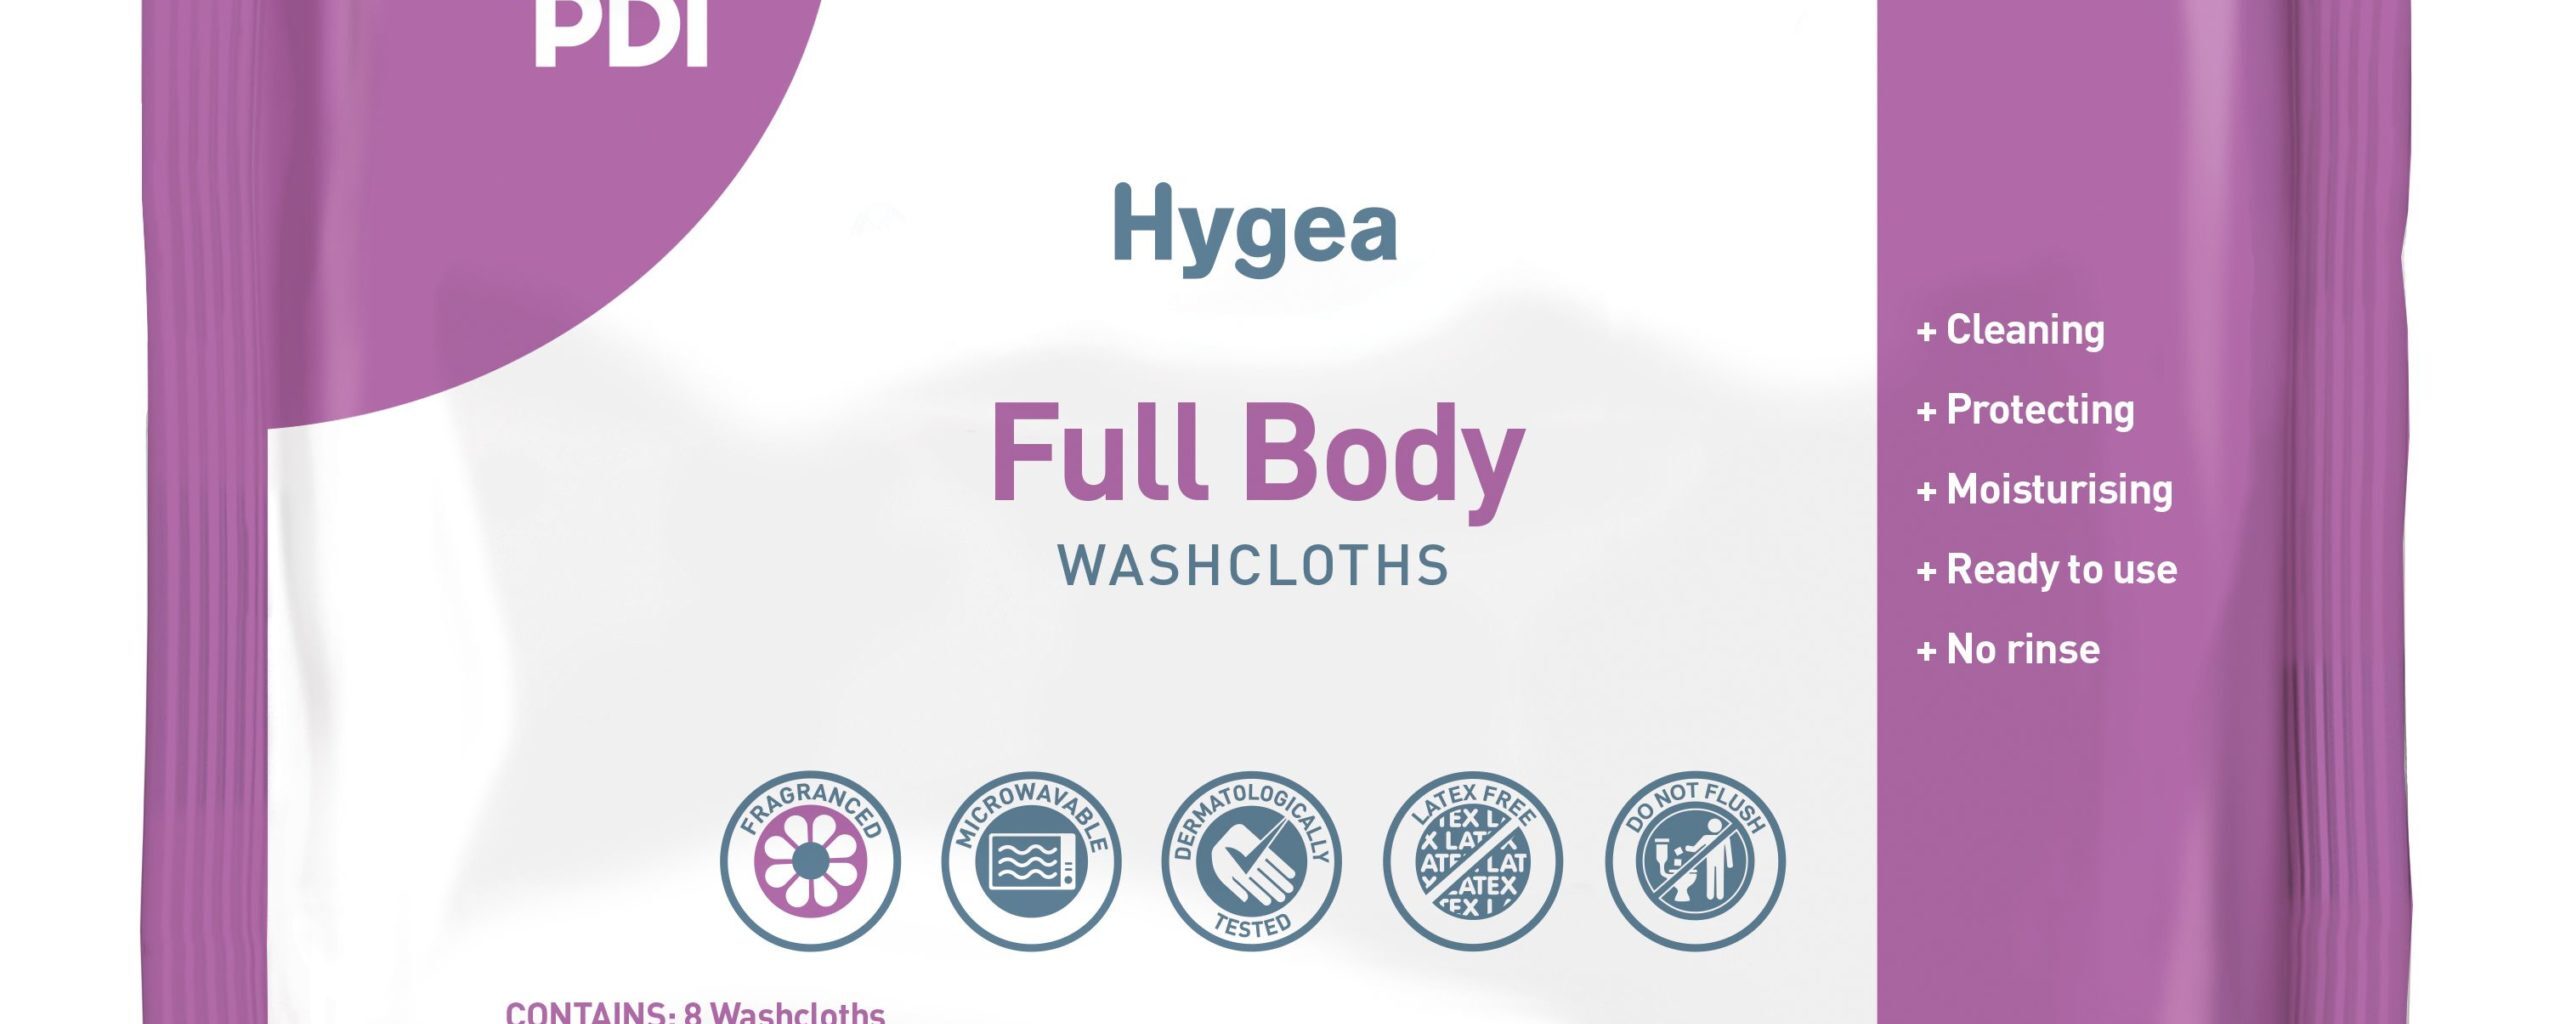 Hygea Full Body Washcloth